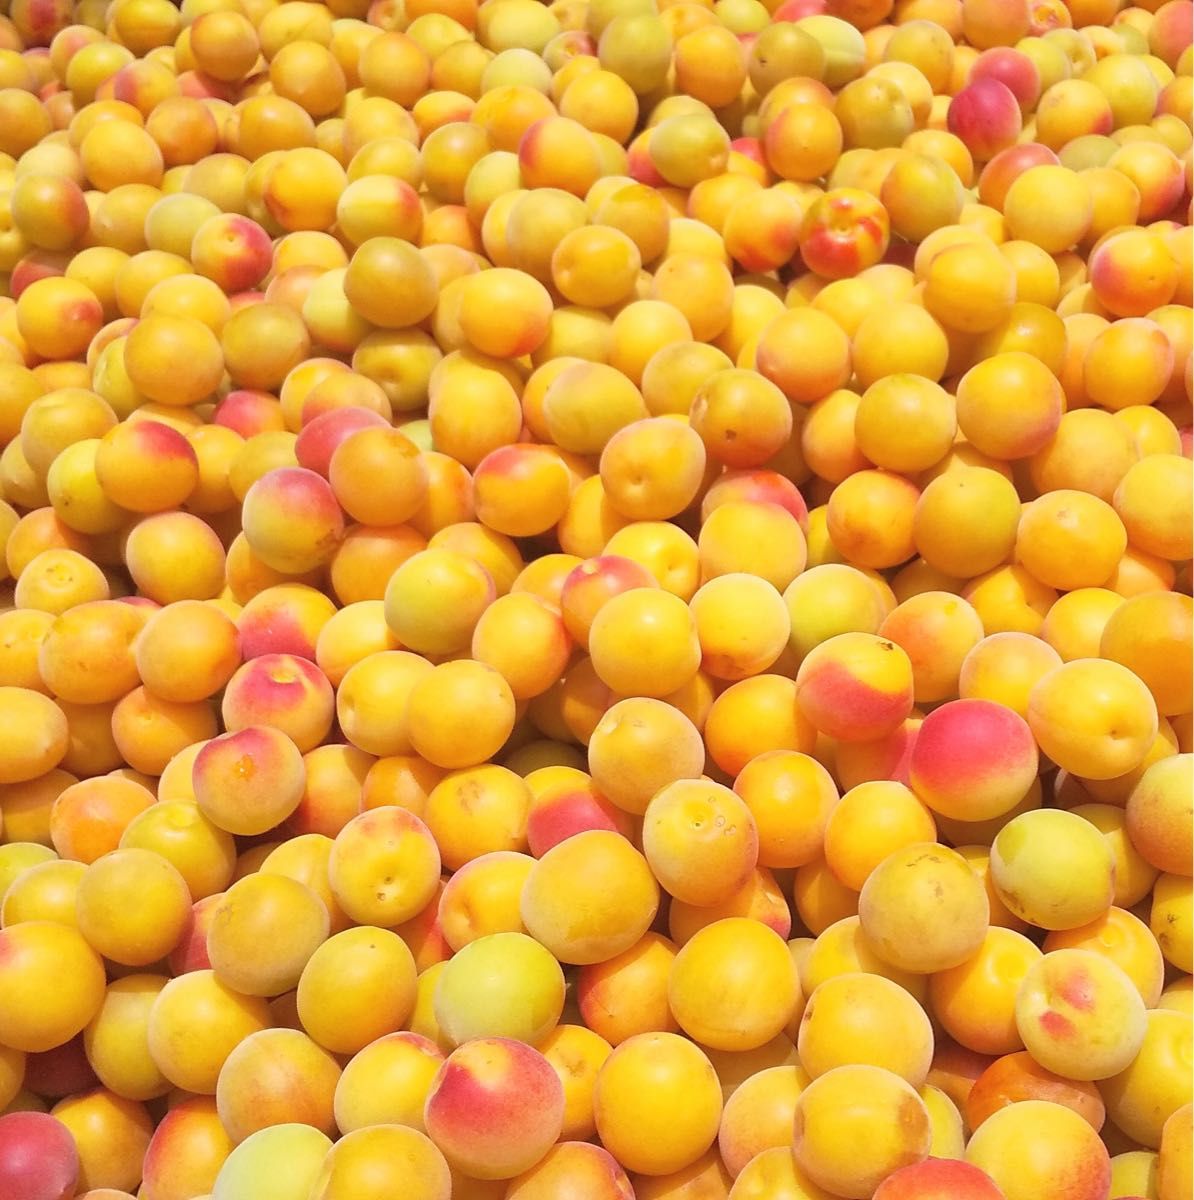 紀州南高梅 はちみつ梅 800g 塩分3% 完熟梅